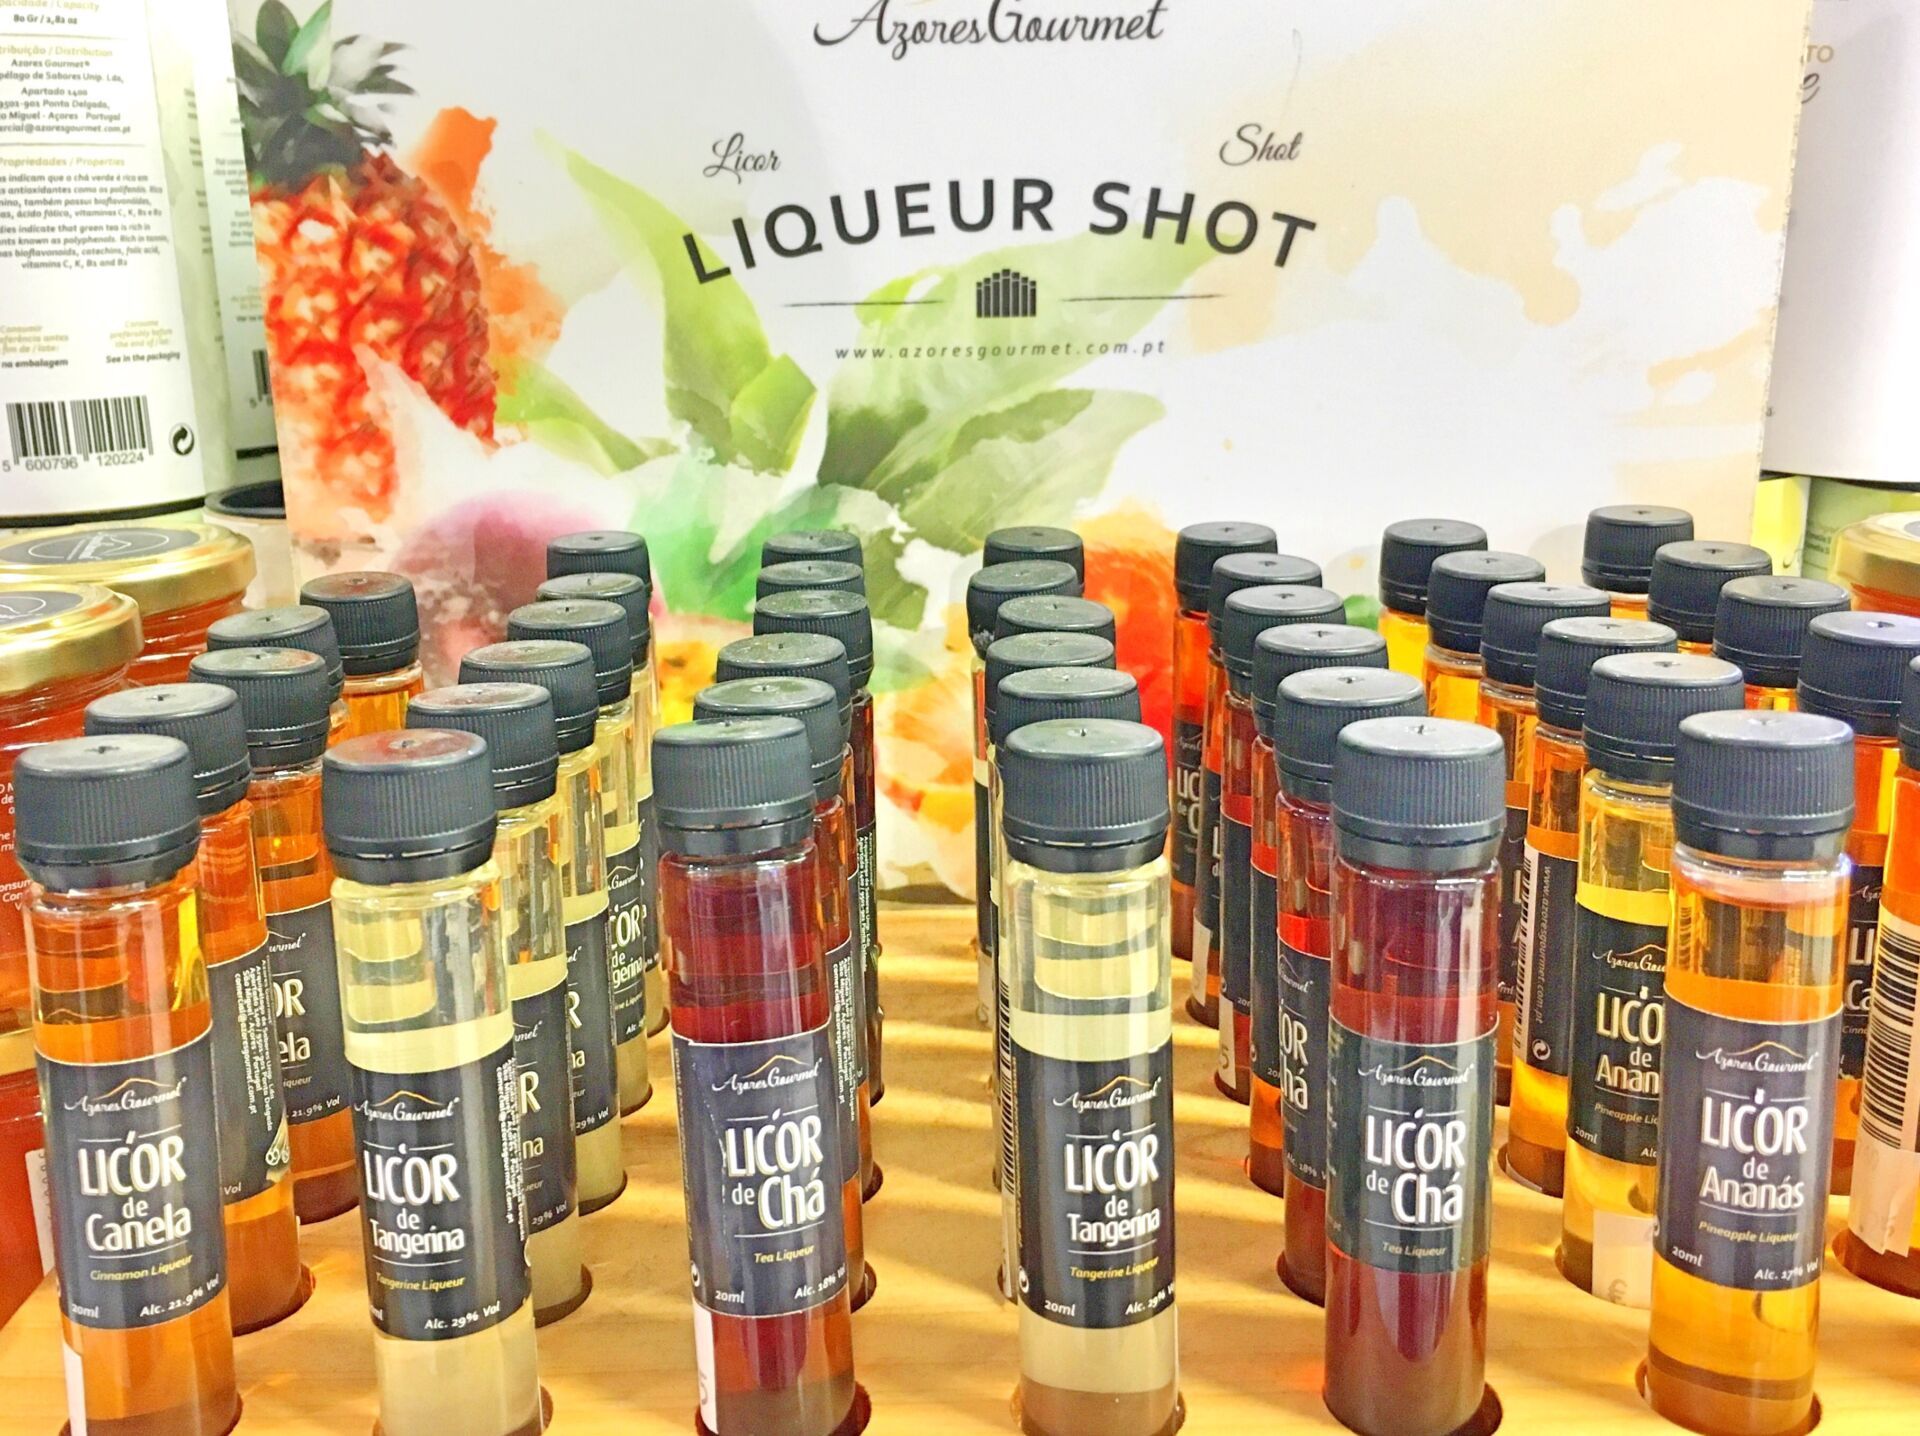 Liqueur shots